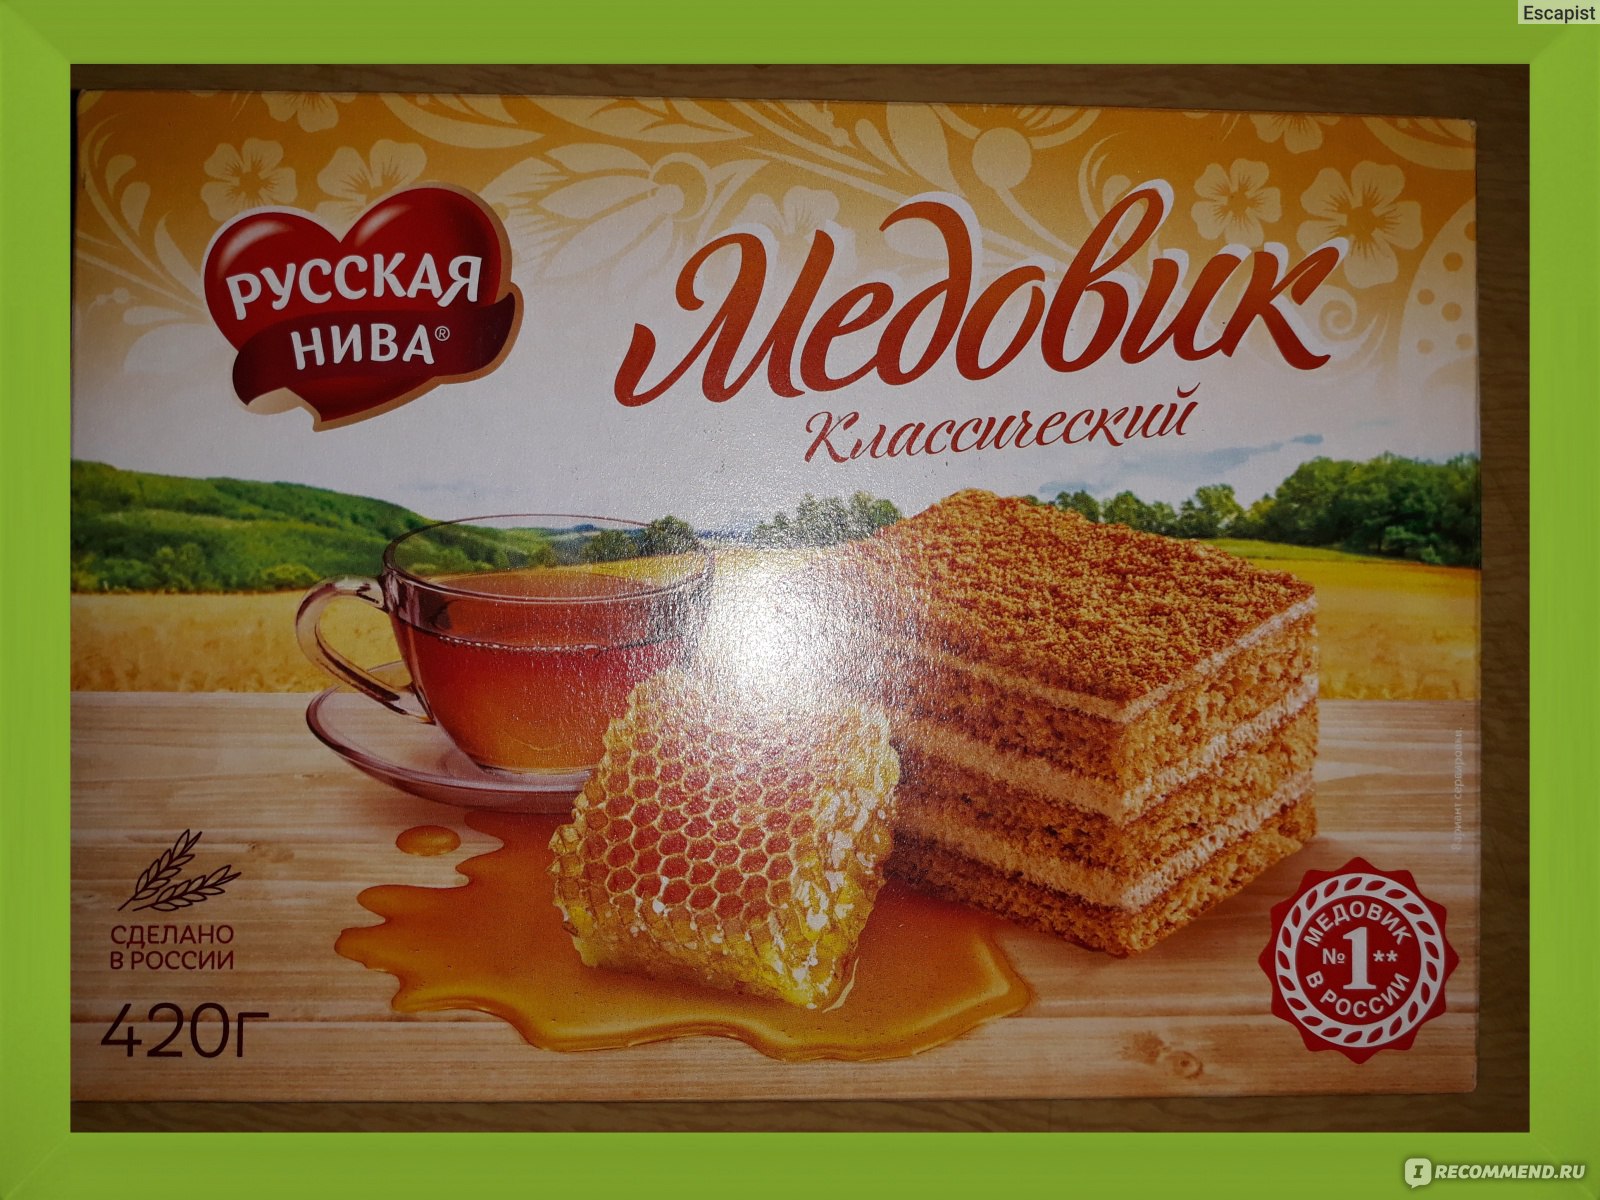 Торт медовик 420г русская Нива